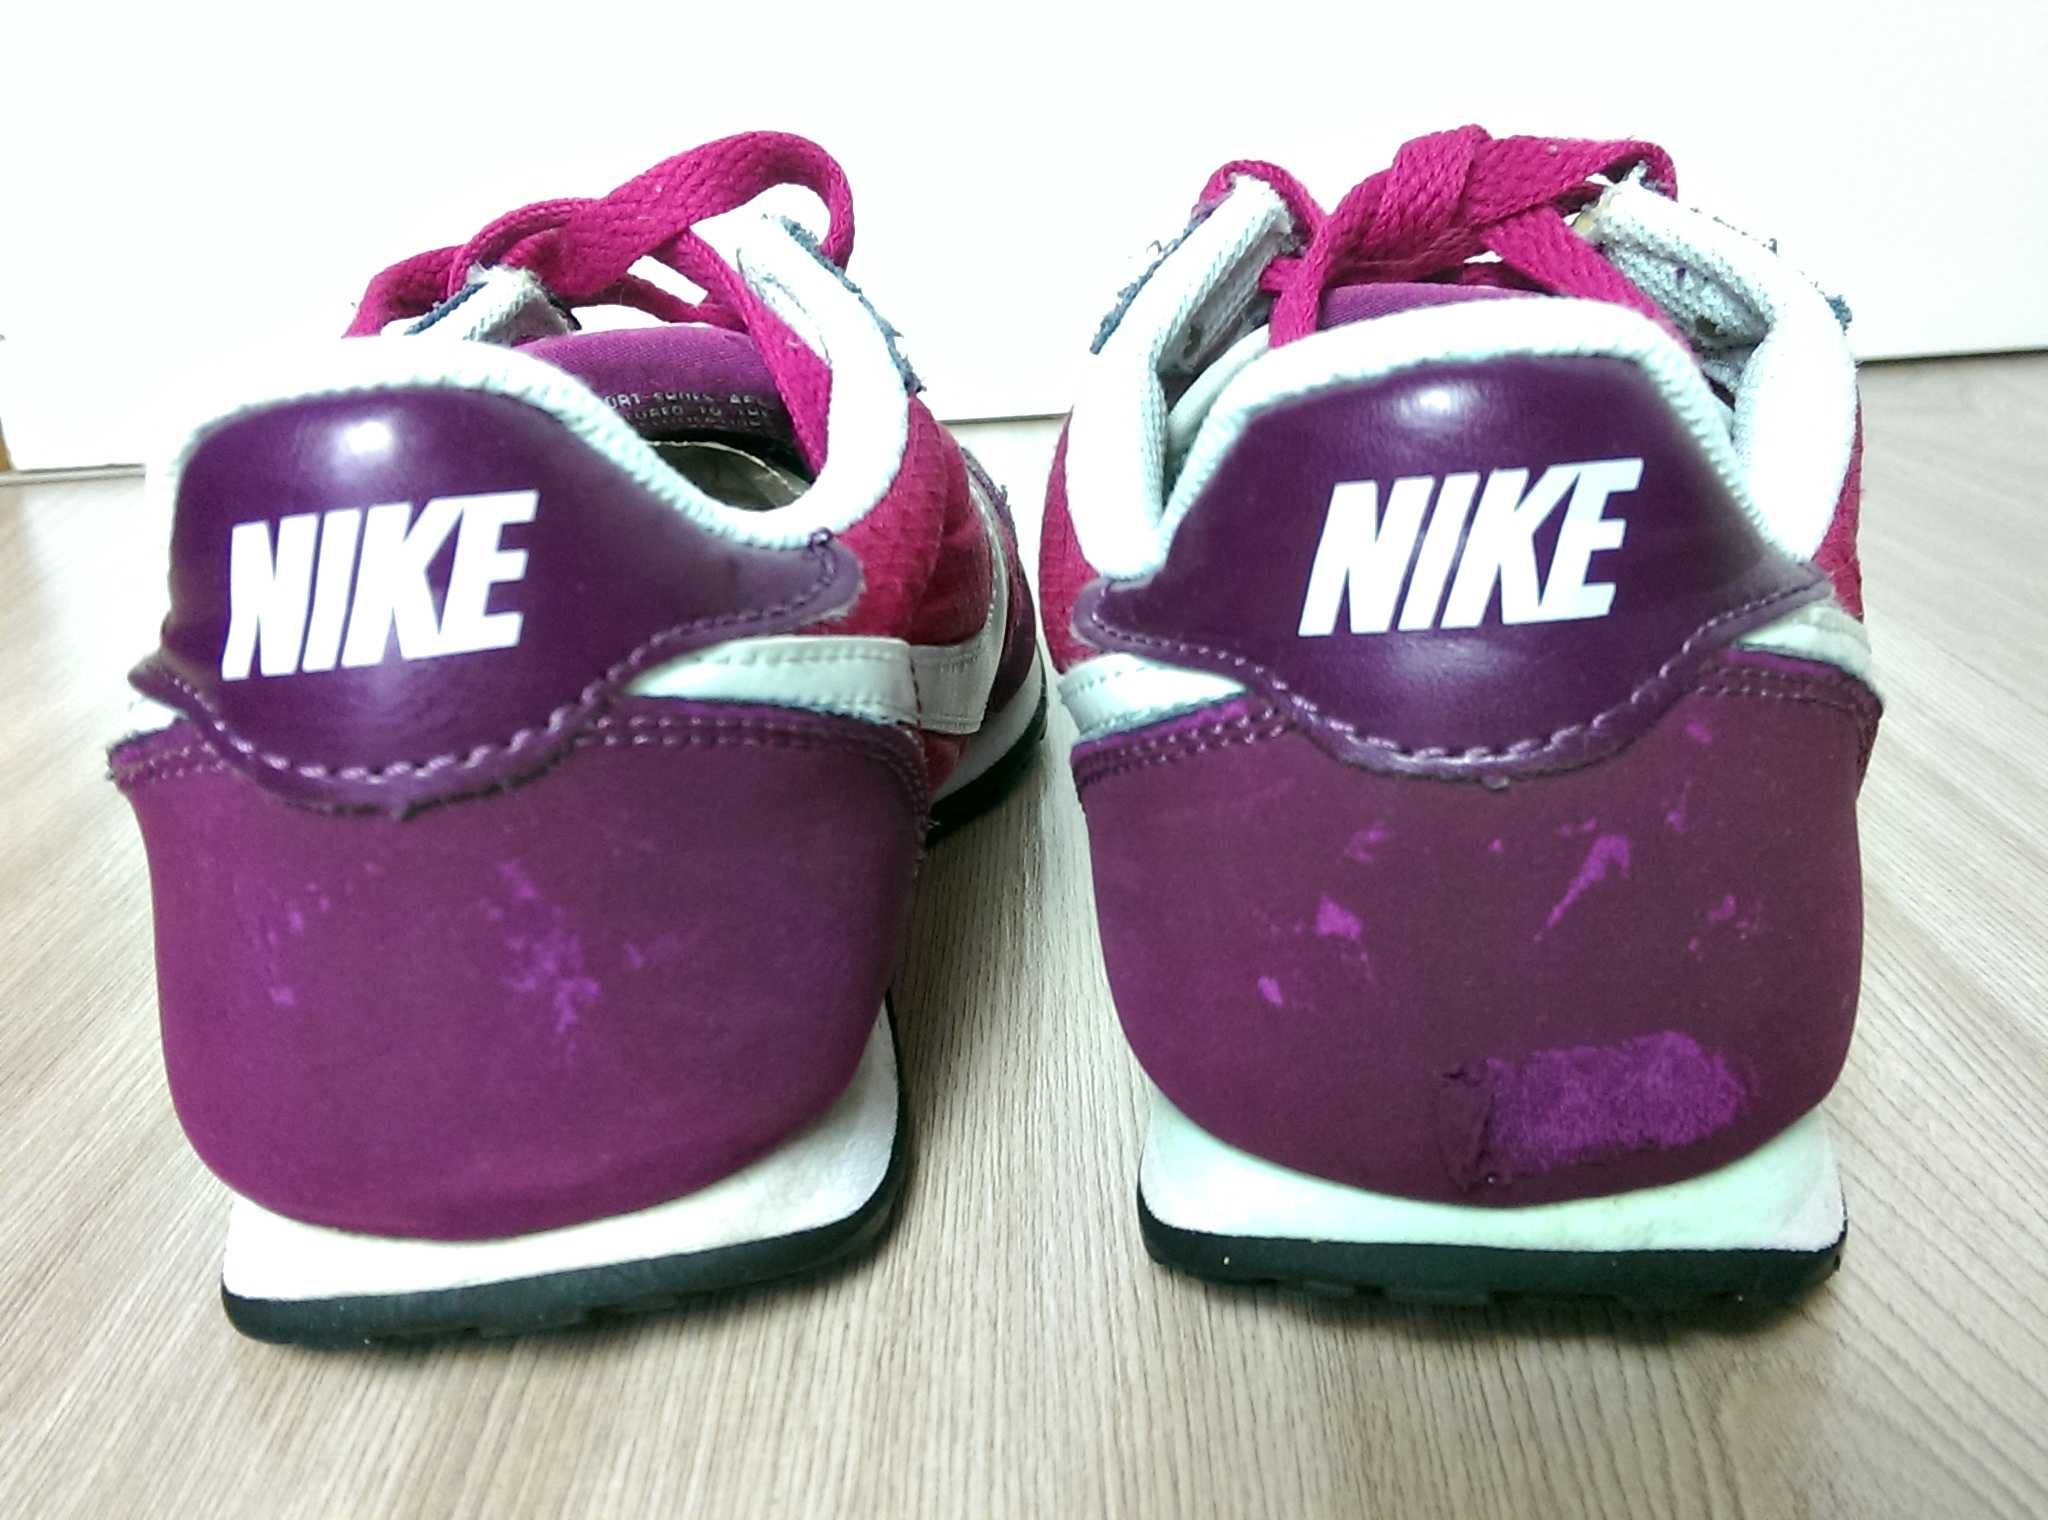 Buty Nike Wmns Genicco 36.5 bordowe różowe fioletowe damskie